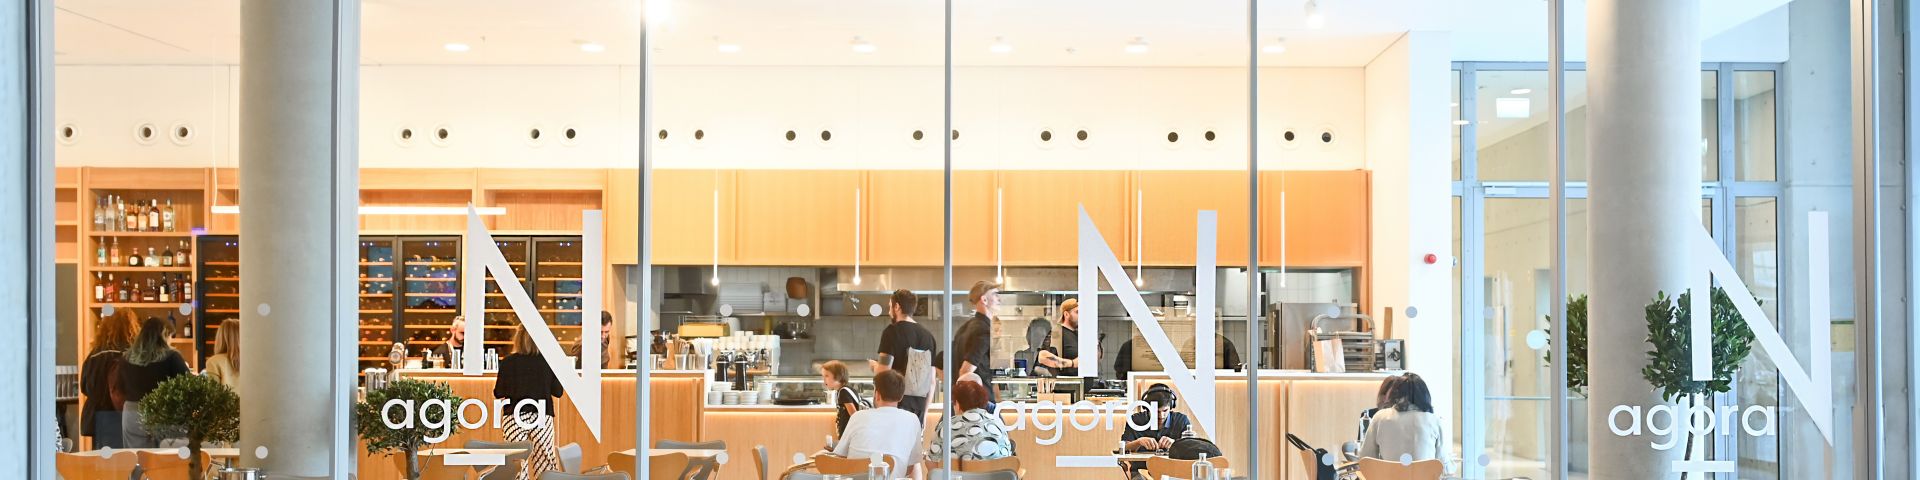 φωτογραφία του εστιατορίου Agora N, στο οποίο άτομα εργάζονται στην ανοιχτή κουζίνα ενώ οι επισκέπτες κάθονται στα τραπέζια